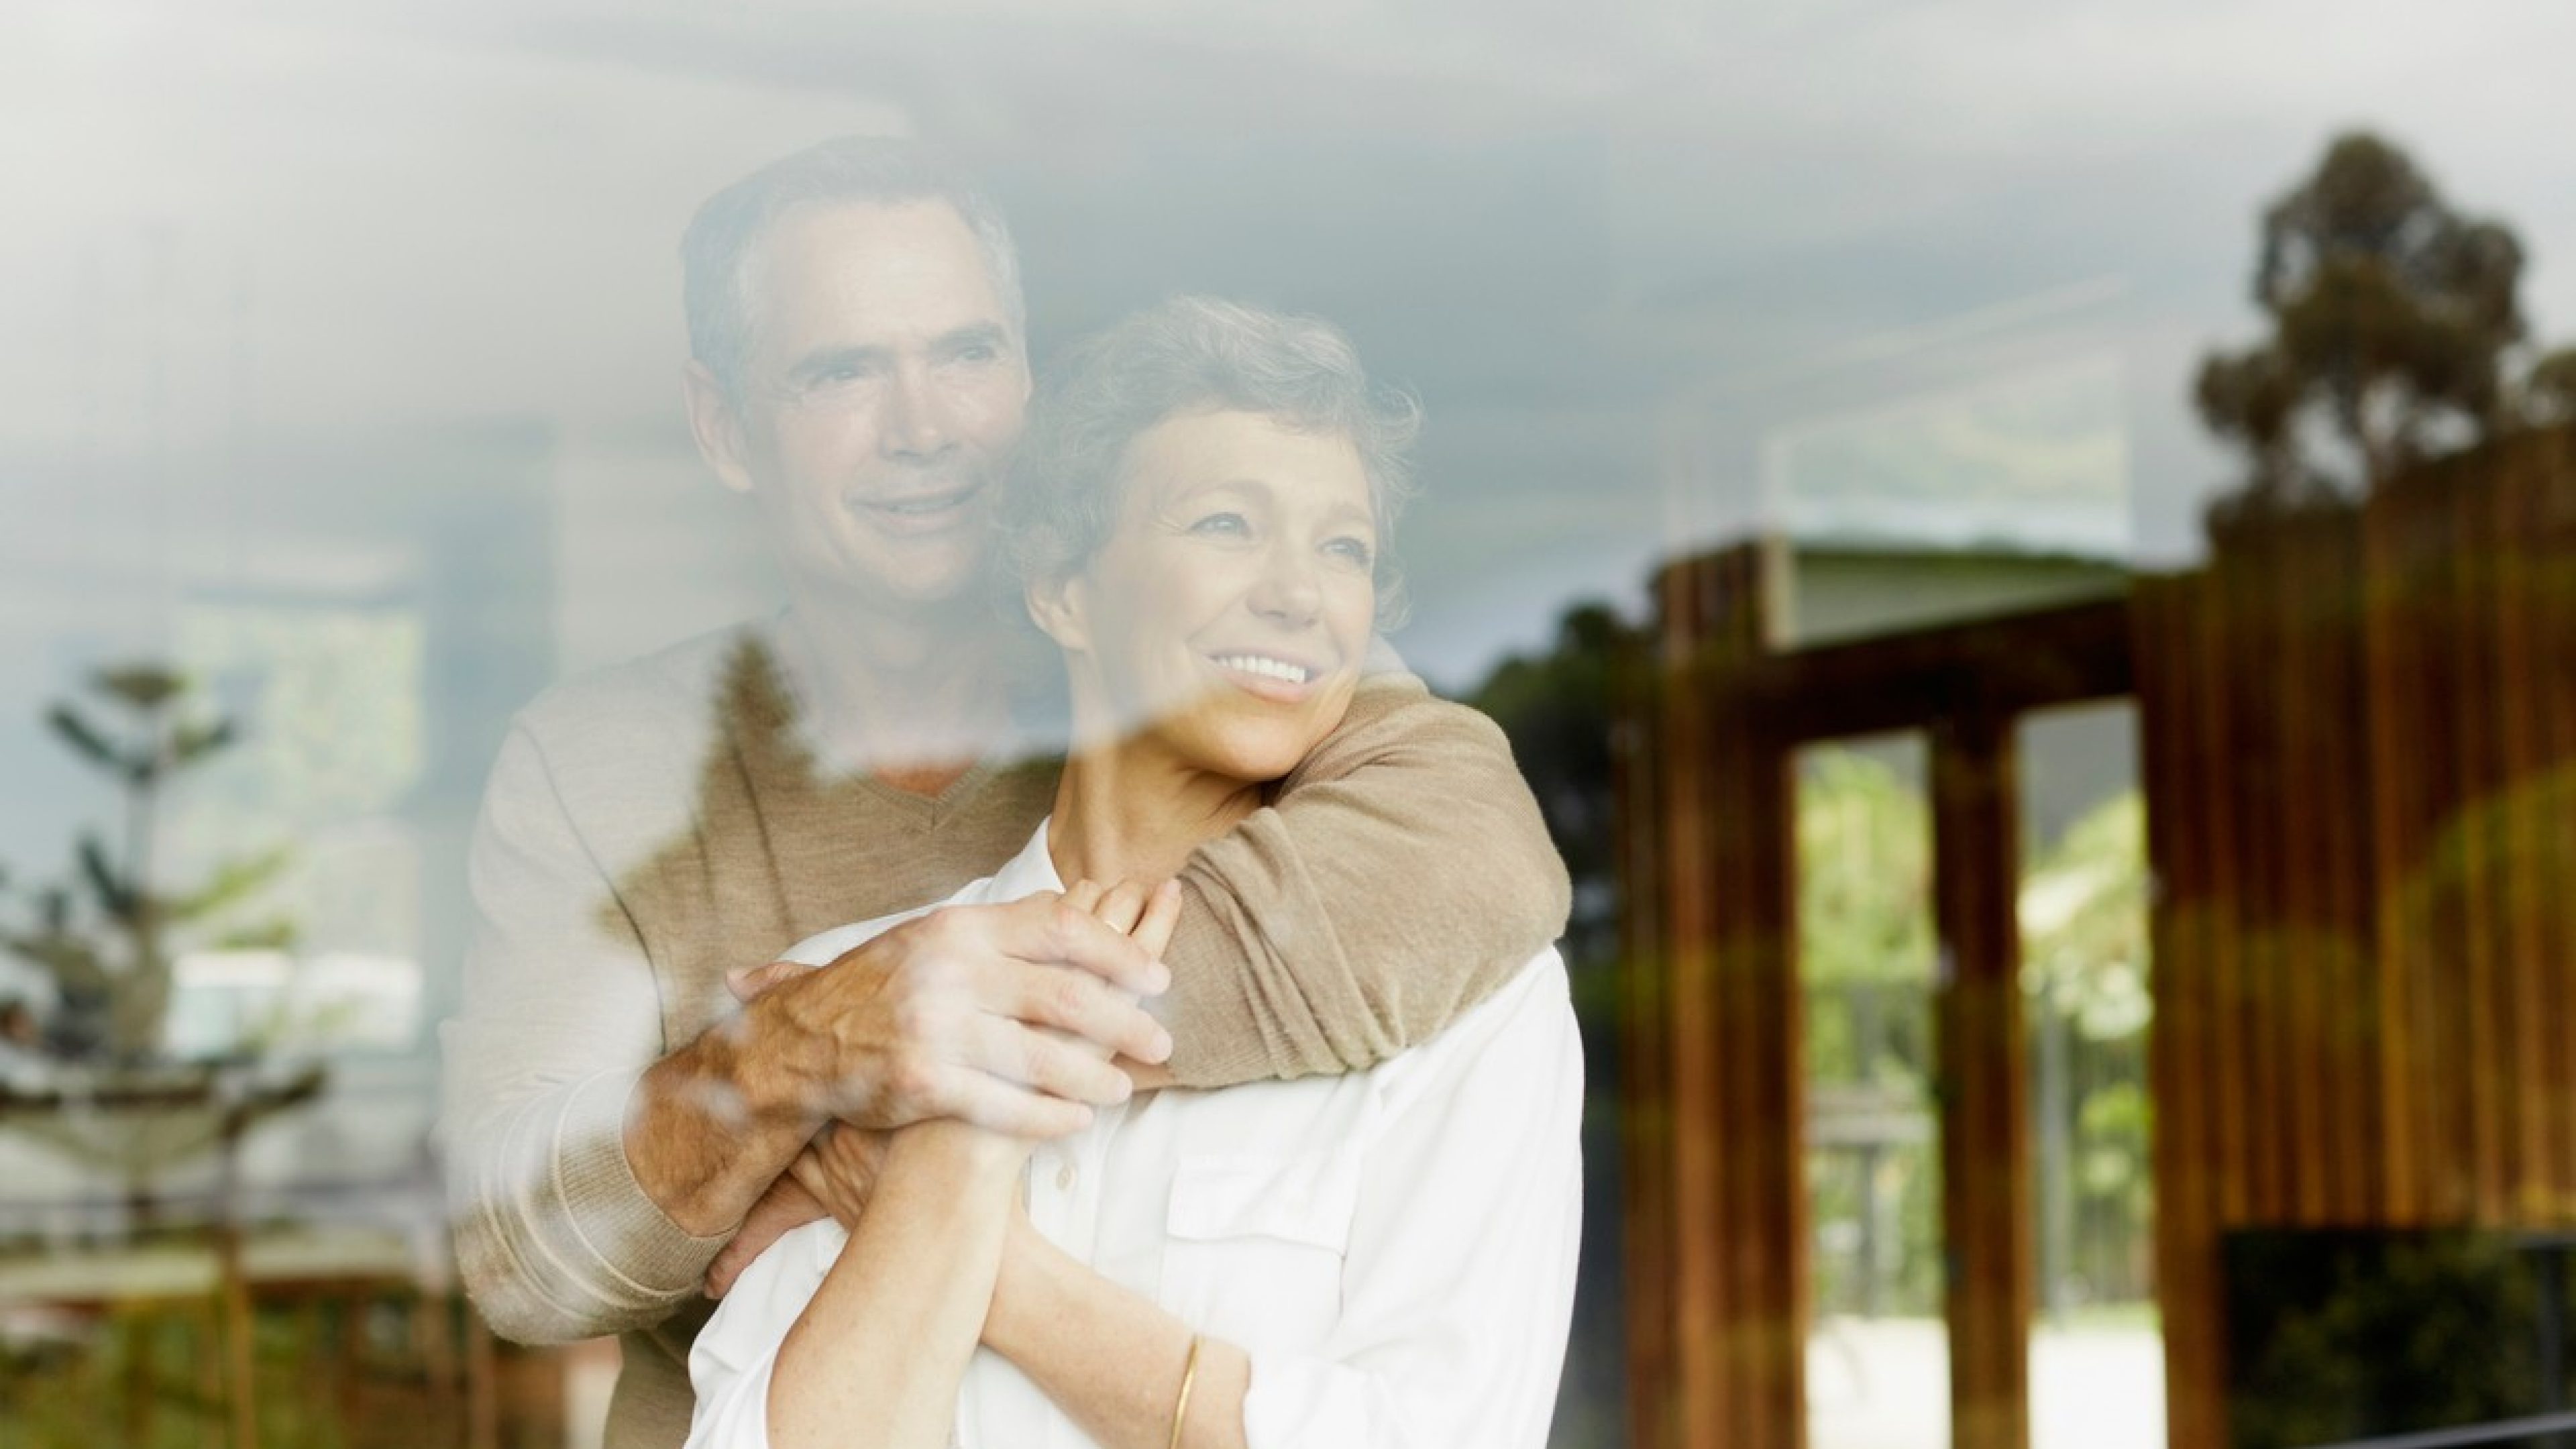 Una coppia over 50 si abbraccia e guarda fuori dalla finestra. I colori sono caldi. L’uomo indossa un maglione beige, la donna una camicetta bianca. Entrambi sorridono e guardano in lontananza dalla finestra.